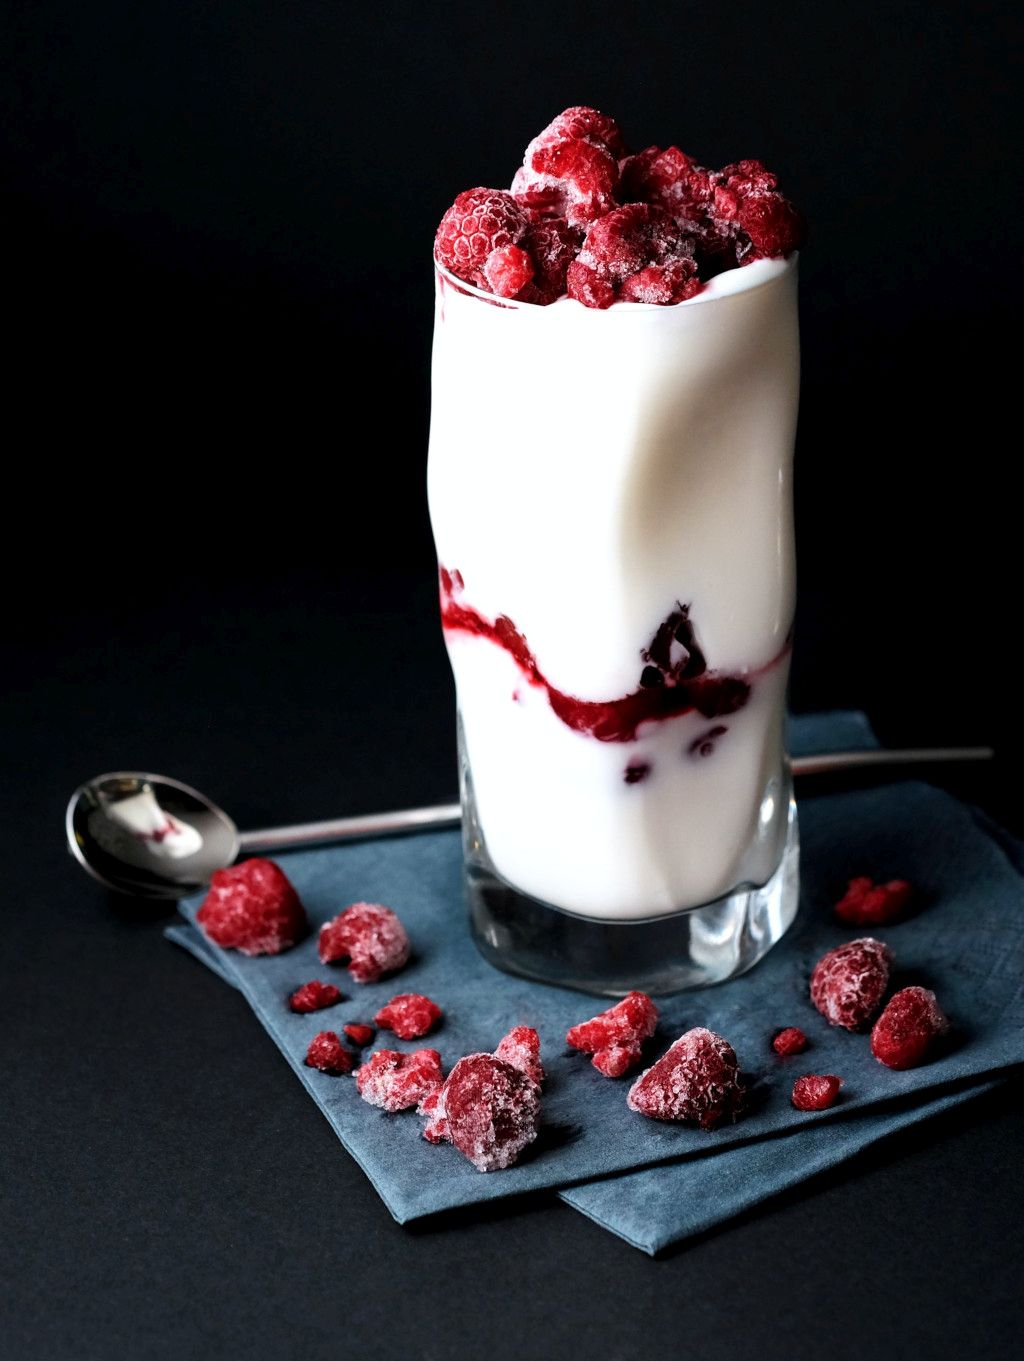 Das Foto zeigt einen Frozen Joghurt im Glas als Beispiel für Eis-Alternativen zum einfachen Selbermachen